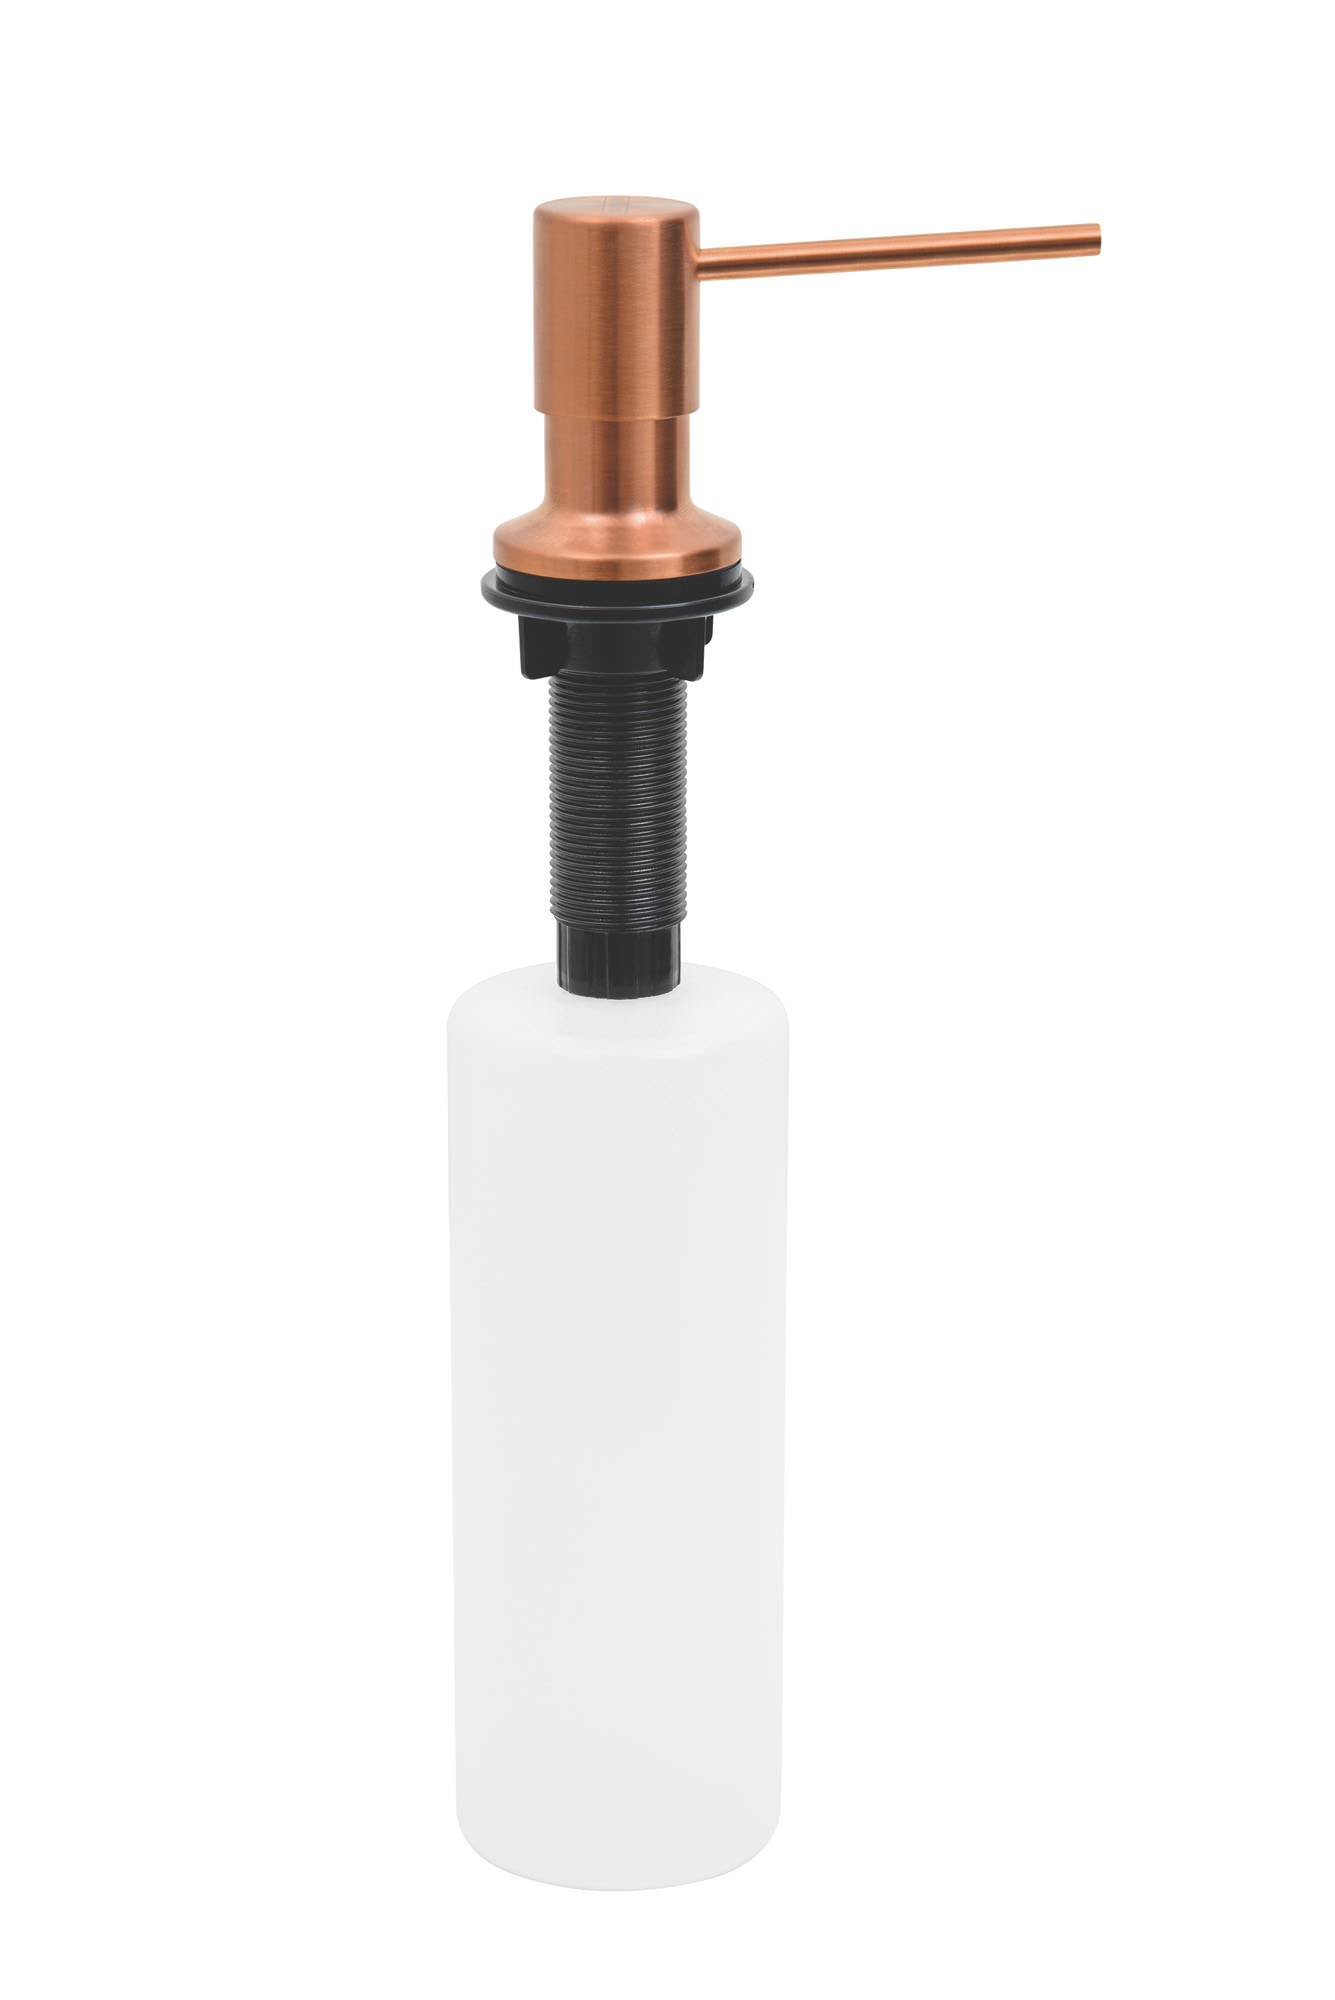 Dosador de Sabão  Aço inox Rose Gold com Recipiente Plástico 500 ml com revestimento PVD